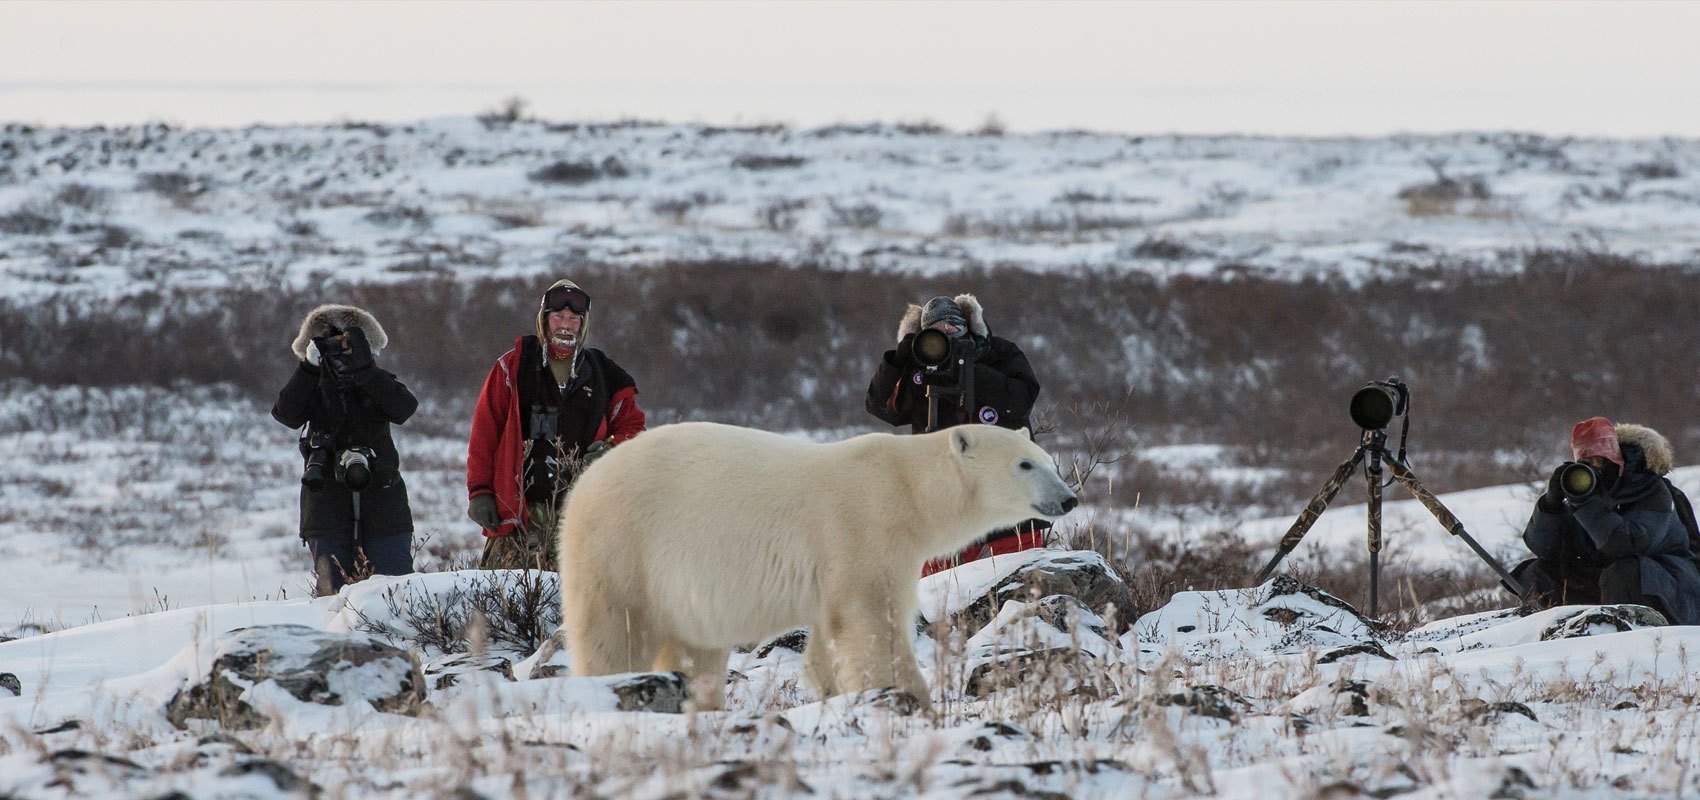  Urşii polari din nordul Canadei dispar rapid, trage un semnal de alarmă un studiu guvernamental